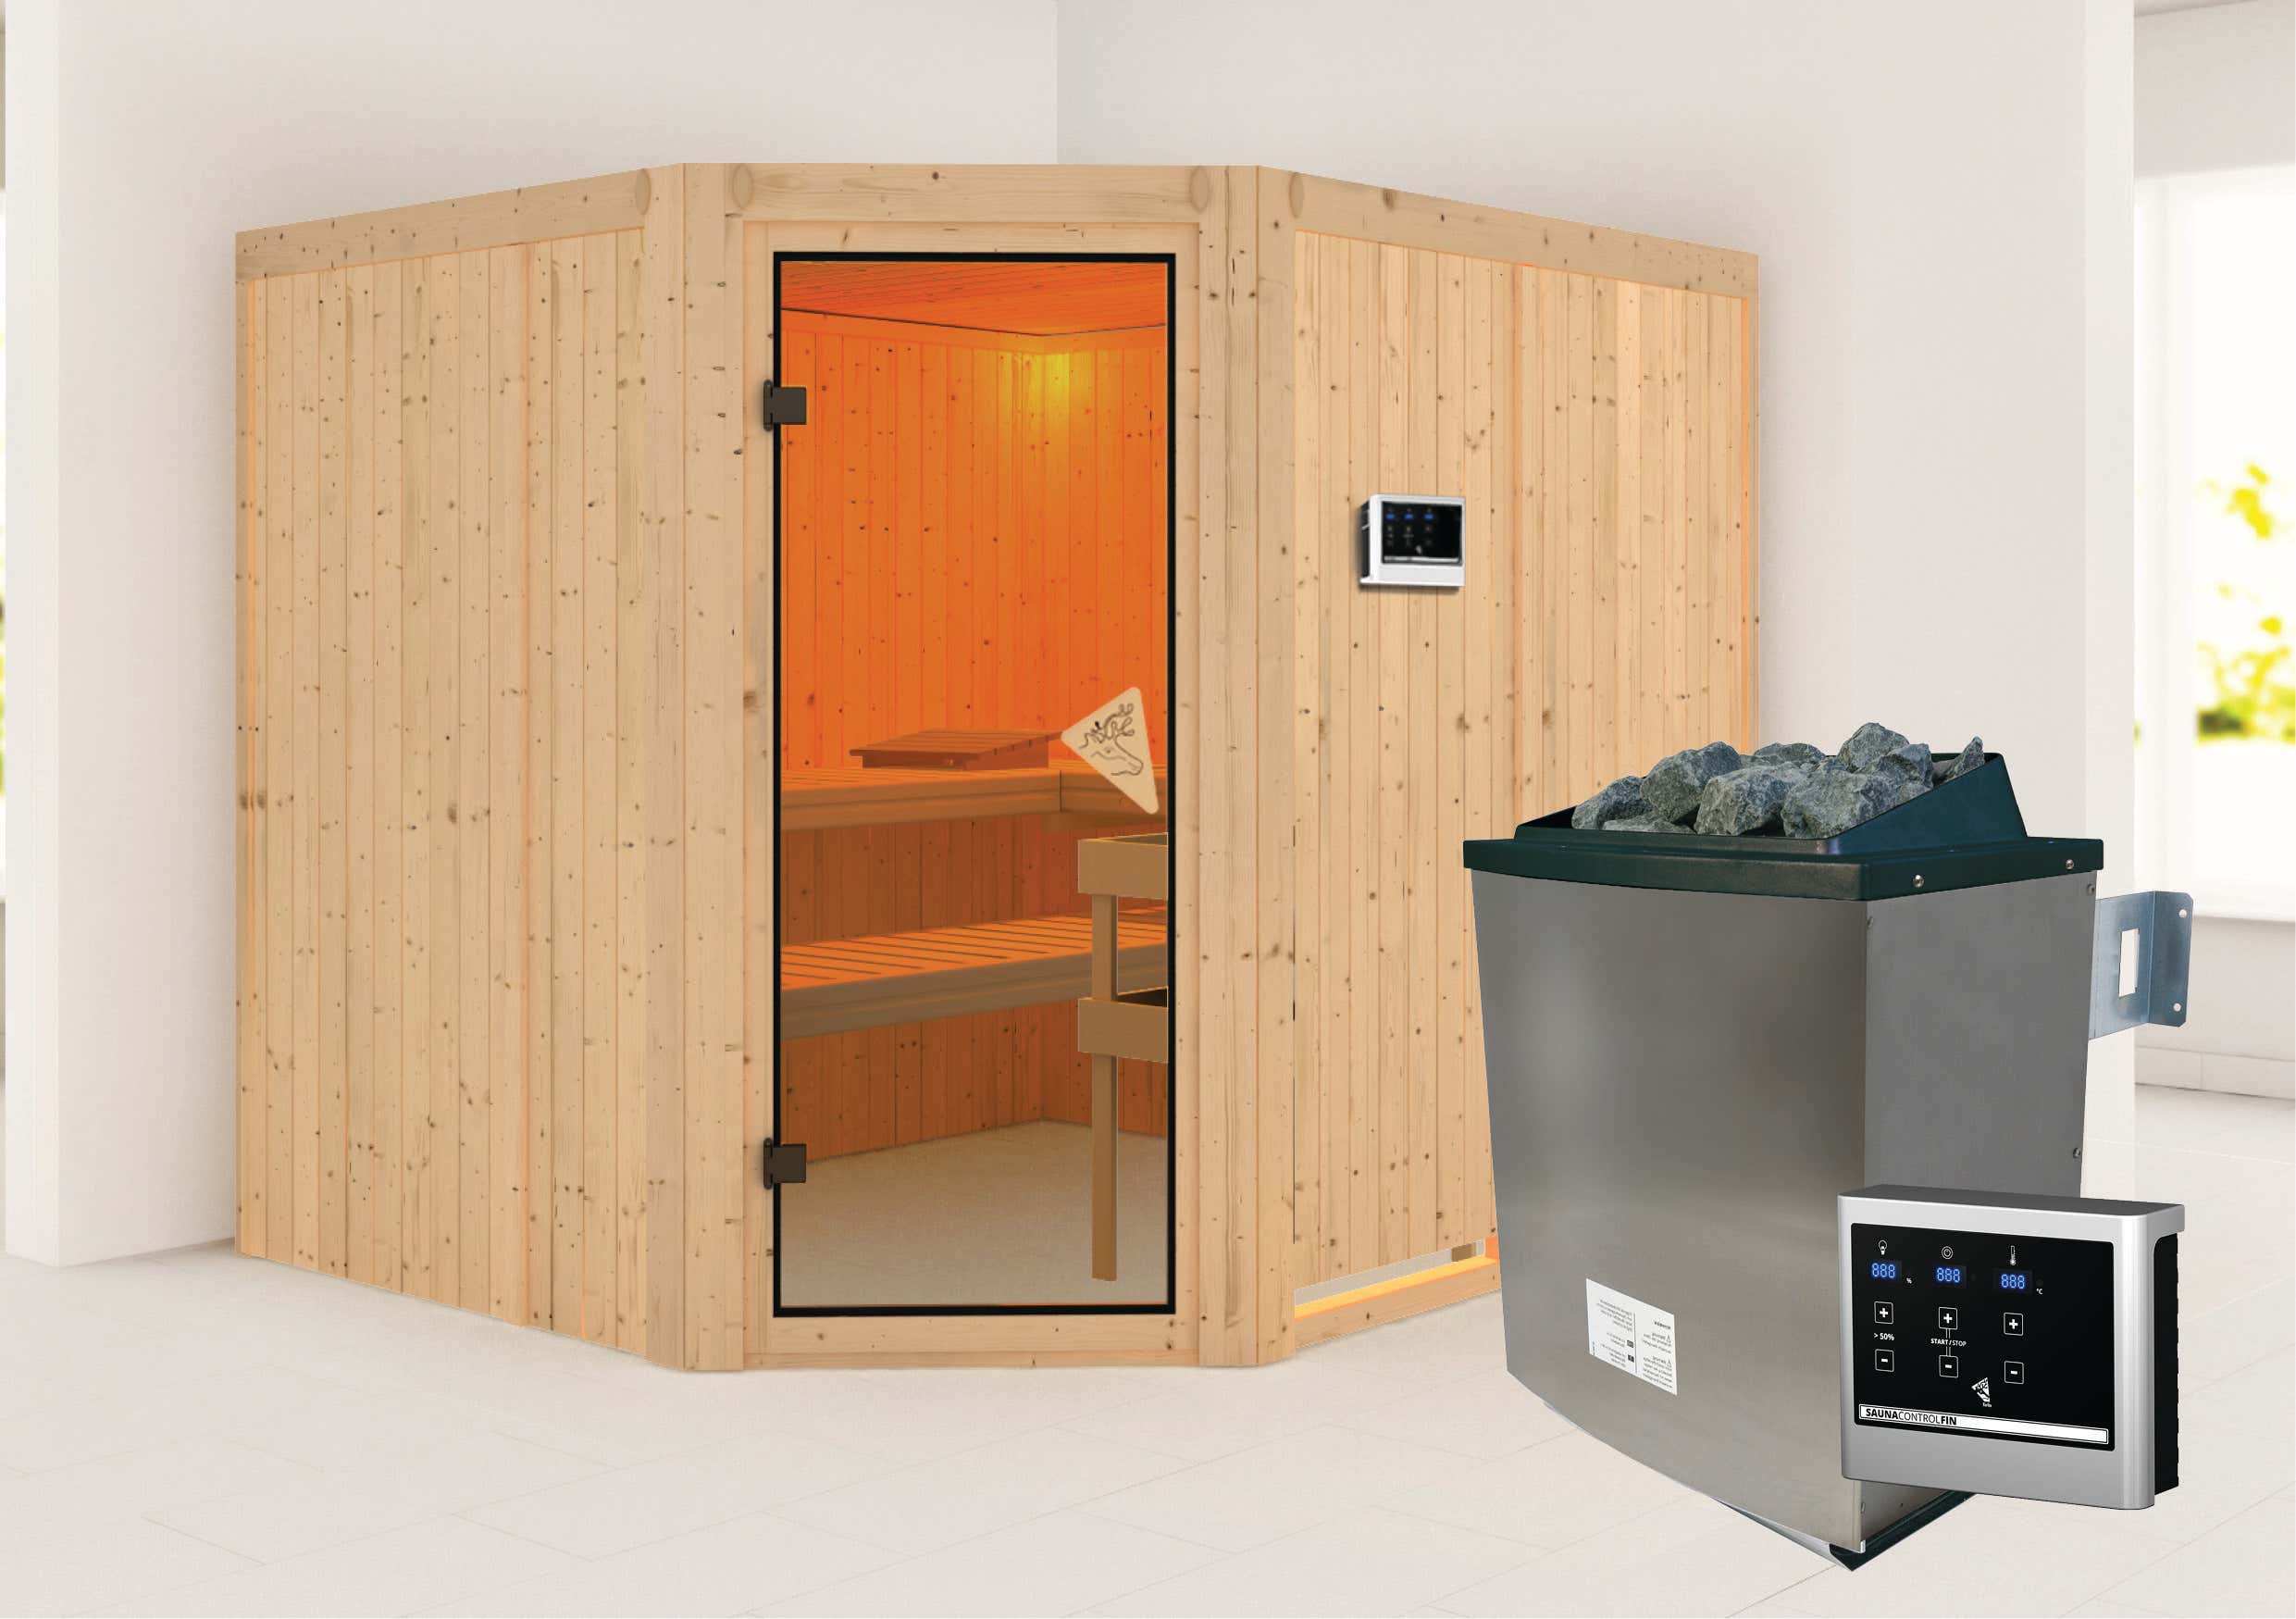 Karibu Sauna Innenkabine Malin Auswahl der Tür:Bronzierte Ganzglastür|Saunaofen:9 KW Saunaofen, ext. Steuerung|Ausführung:Mit Dachkranz